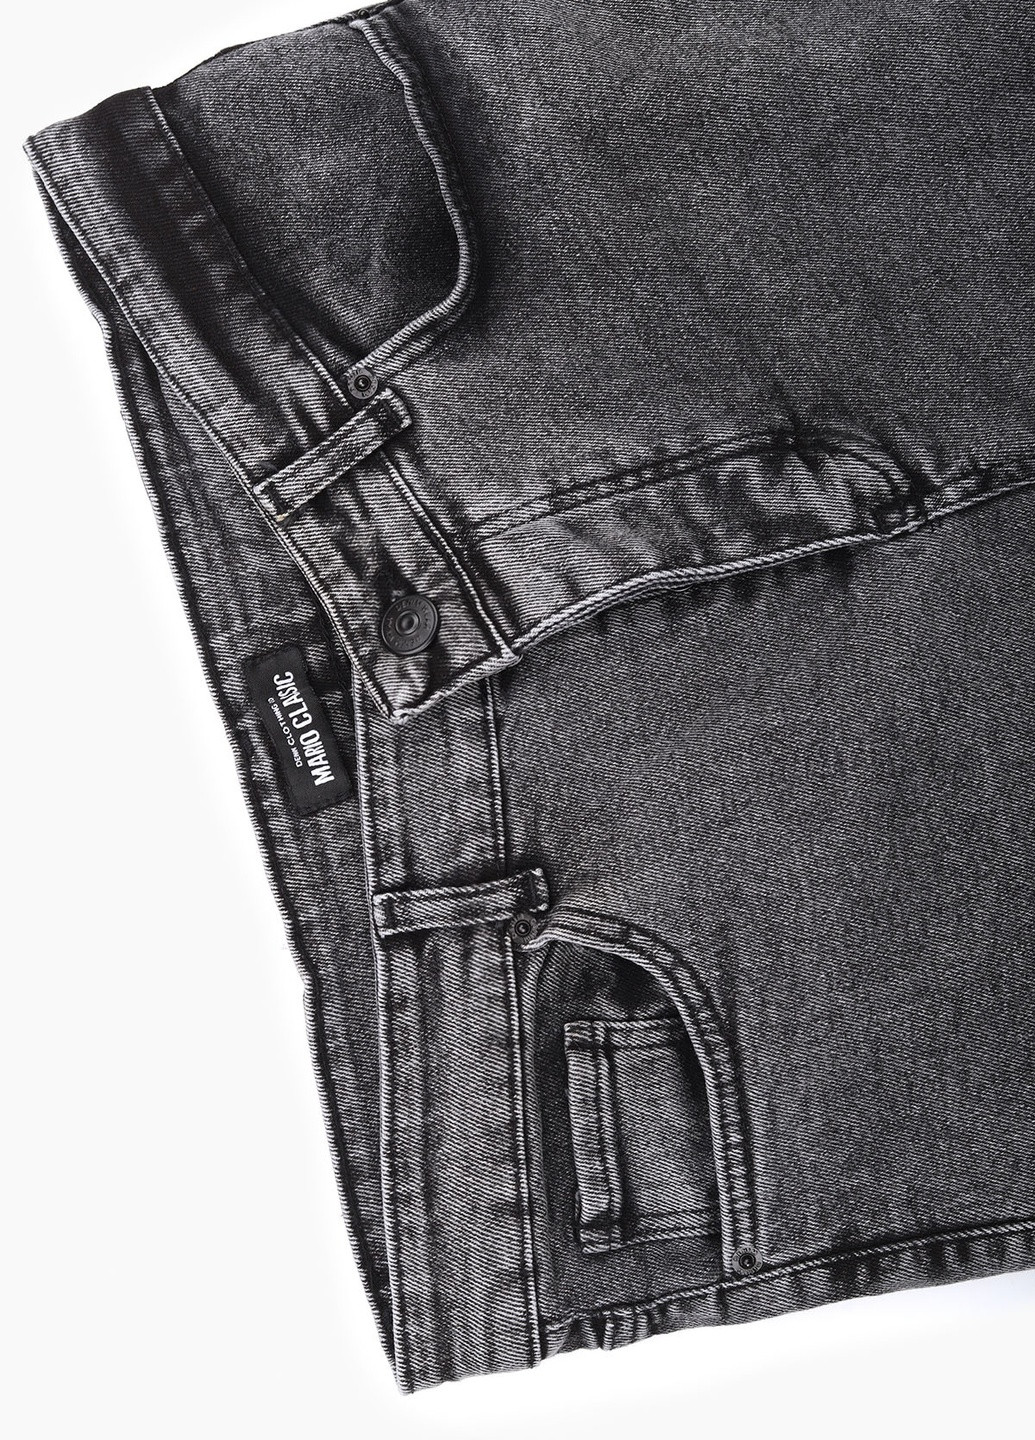 Серые демисезонные джинсы slim fit Mario Cavalli